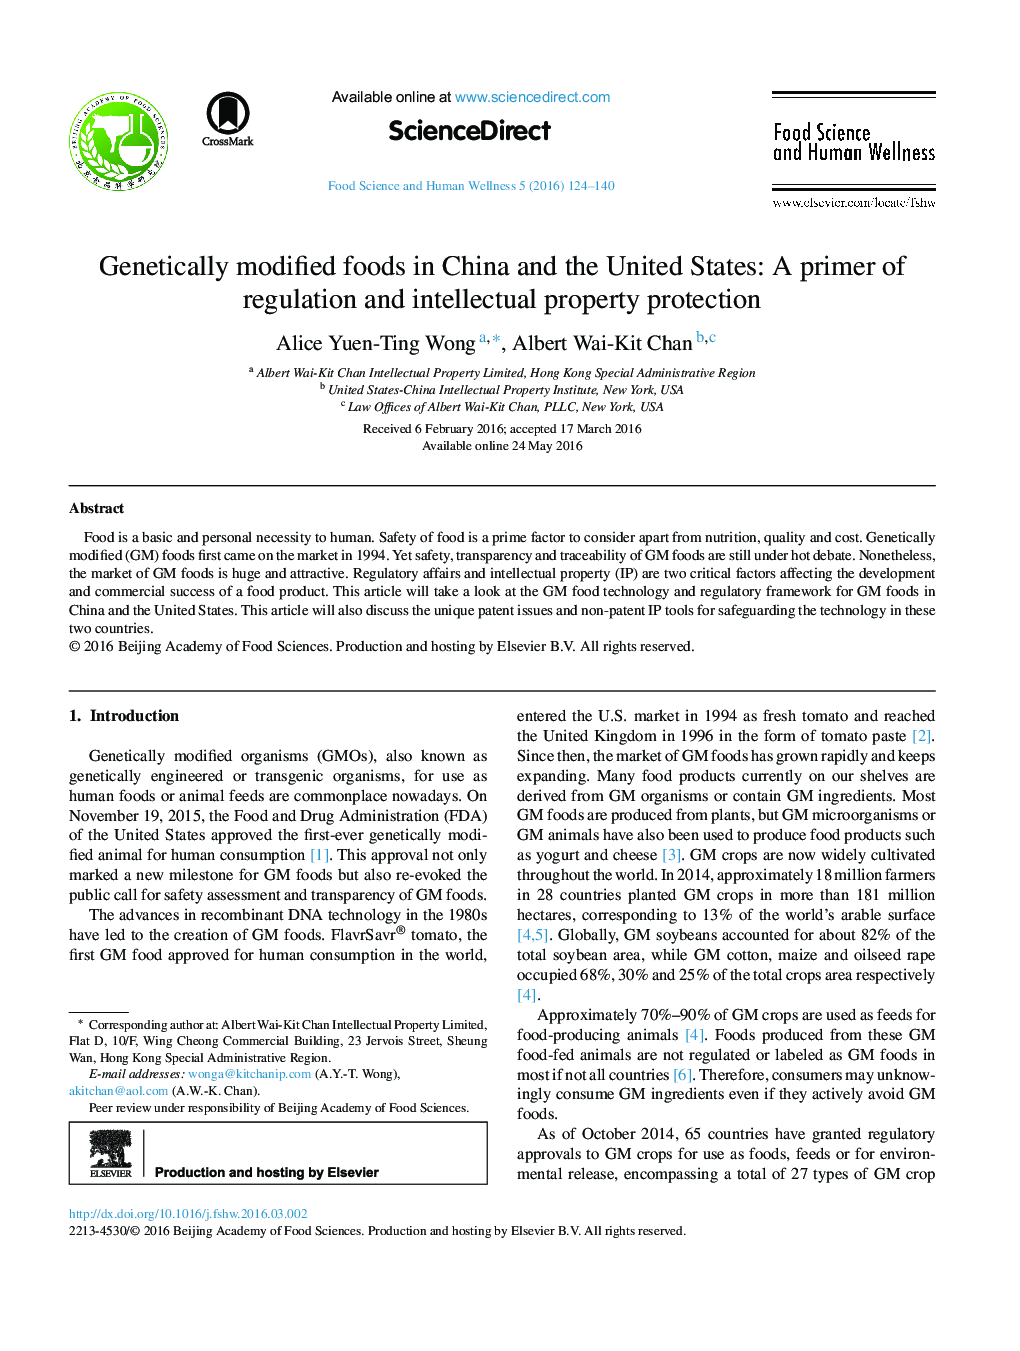 غذاهای اصلاح شده ژنتیکی در چین و ایالات متحده: پرایمر، سازمان و حفاظت از مالکیت معنوی